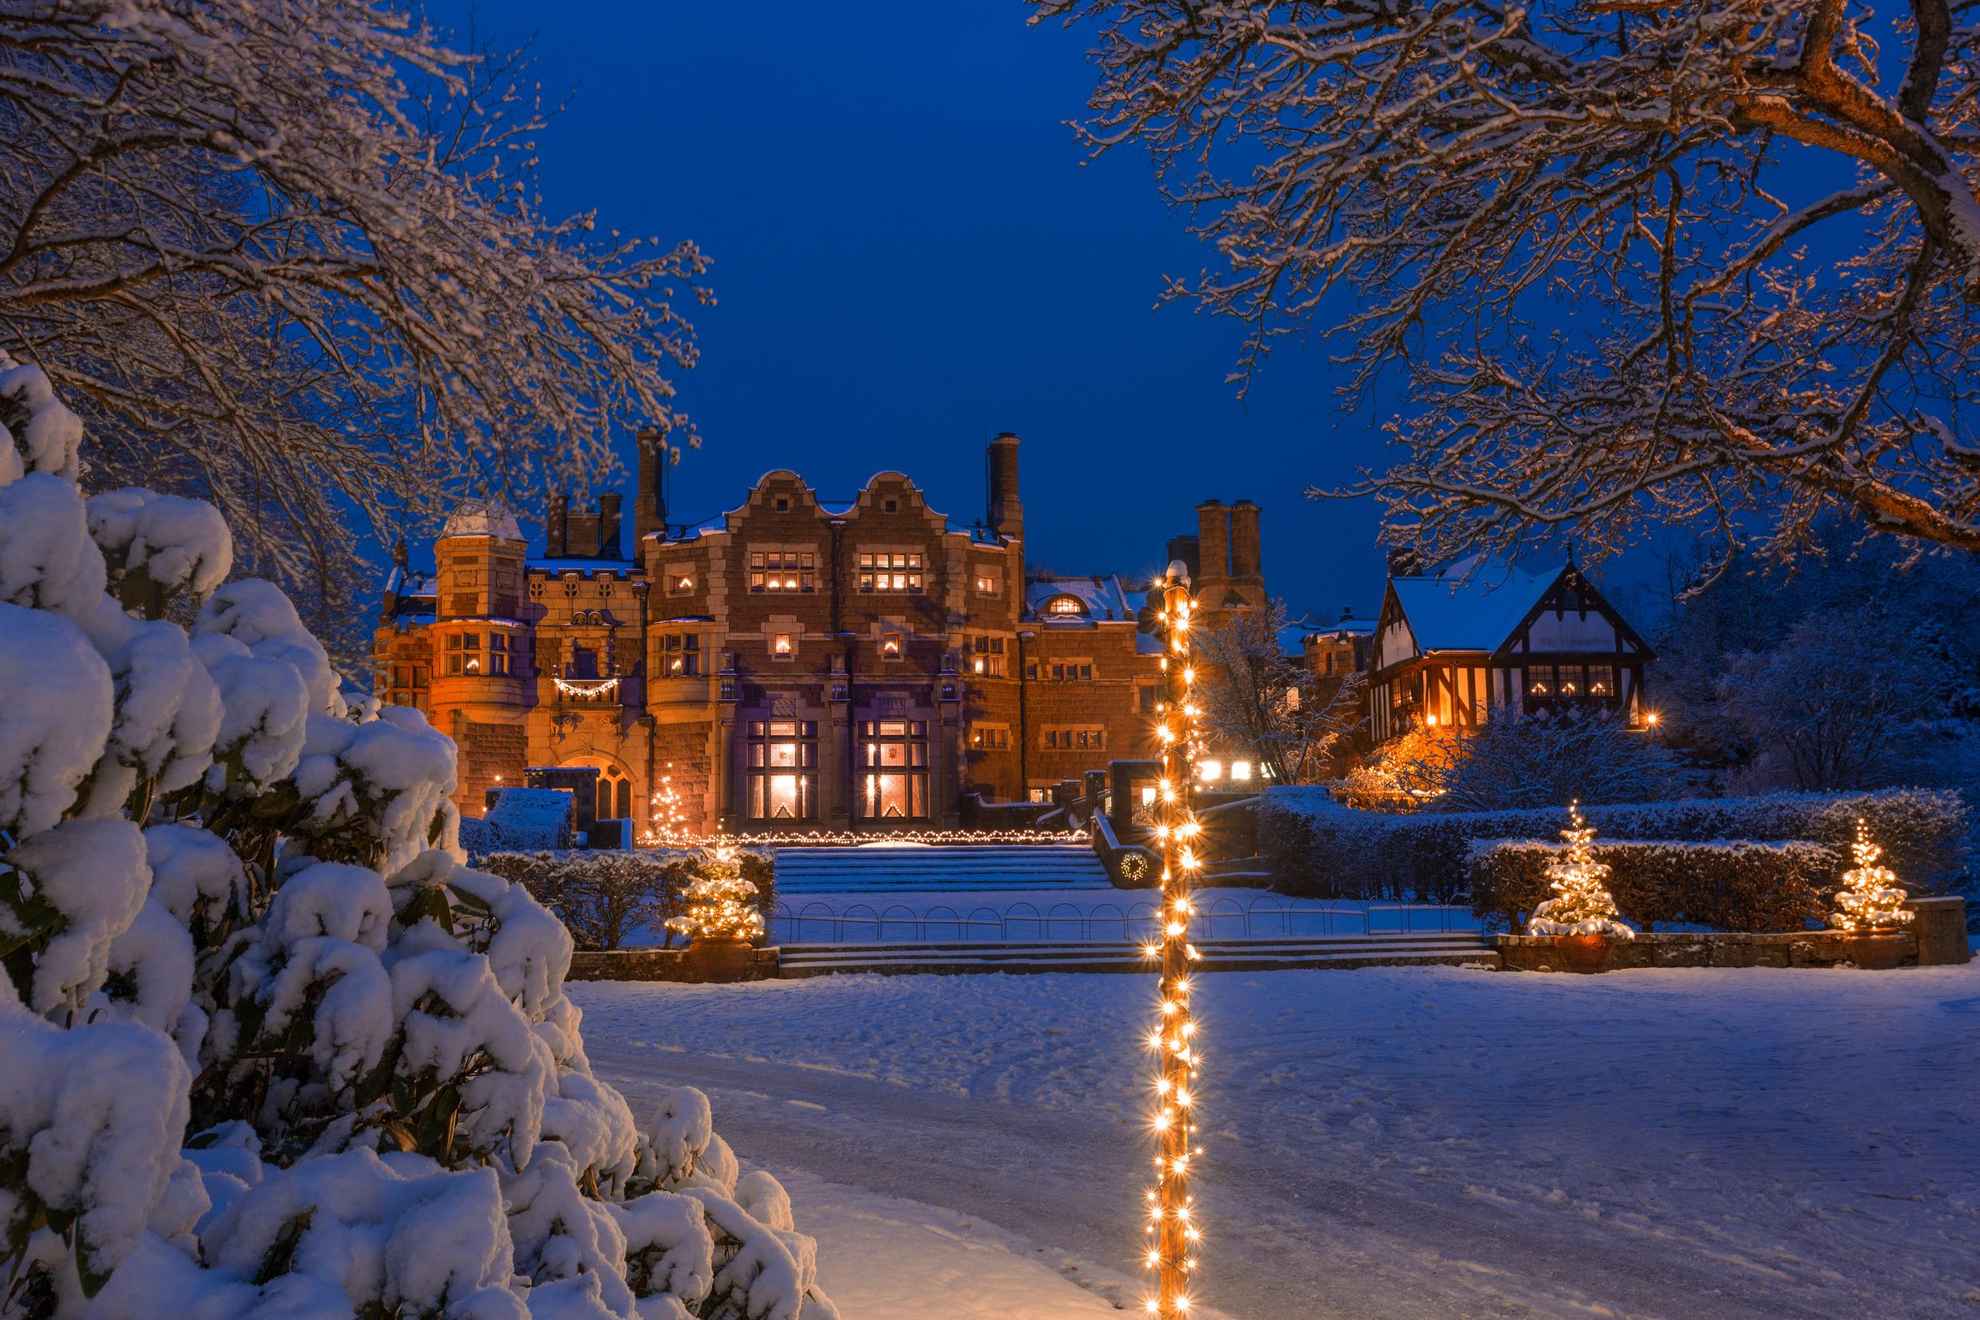 Ein schneebedecktes Schloss und Weihnachtsbeleuchtung in der Abenddämmerung.